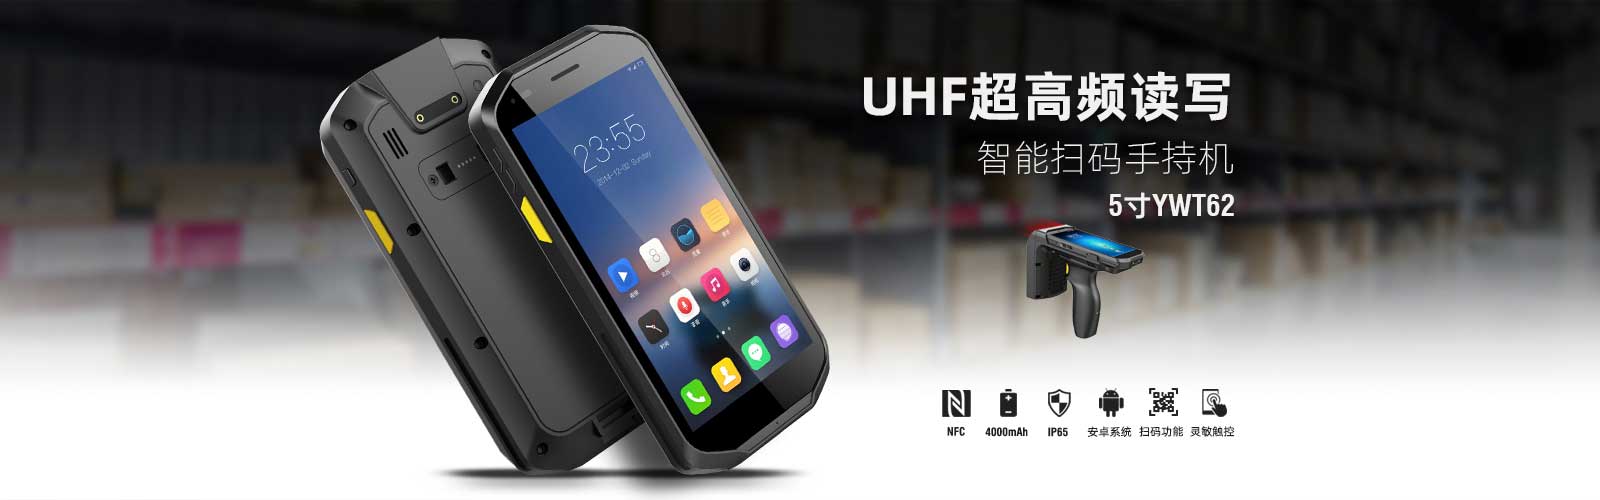 5寸UHF手持机超高频PDA，自带NFC、二维码扫描头，可选配UHF手柄，支持R2000